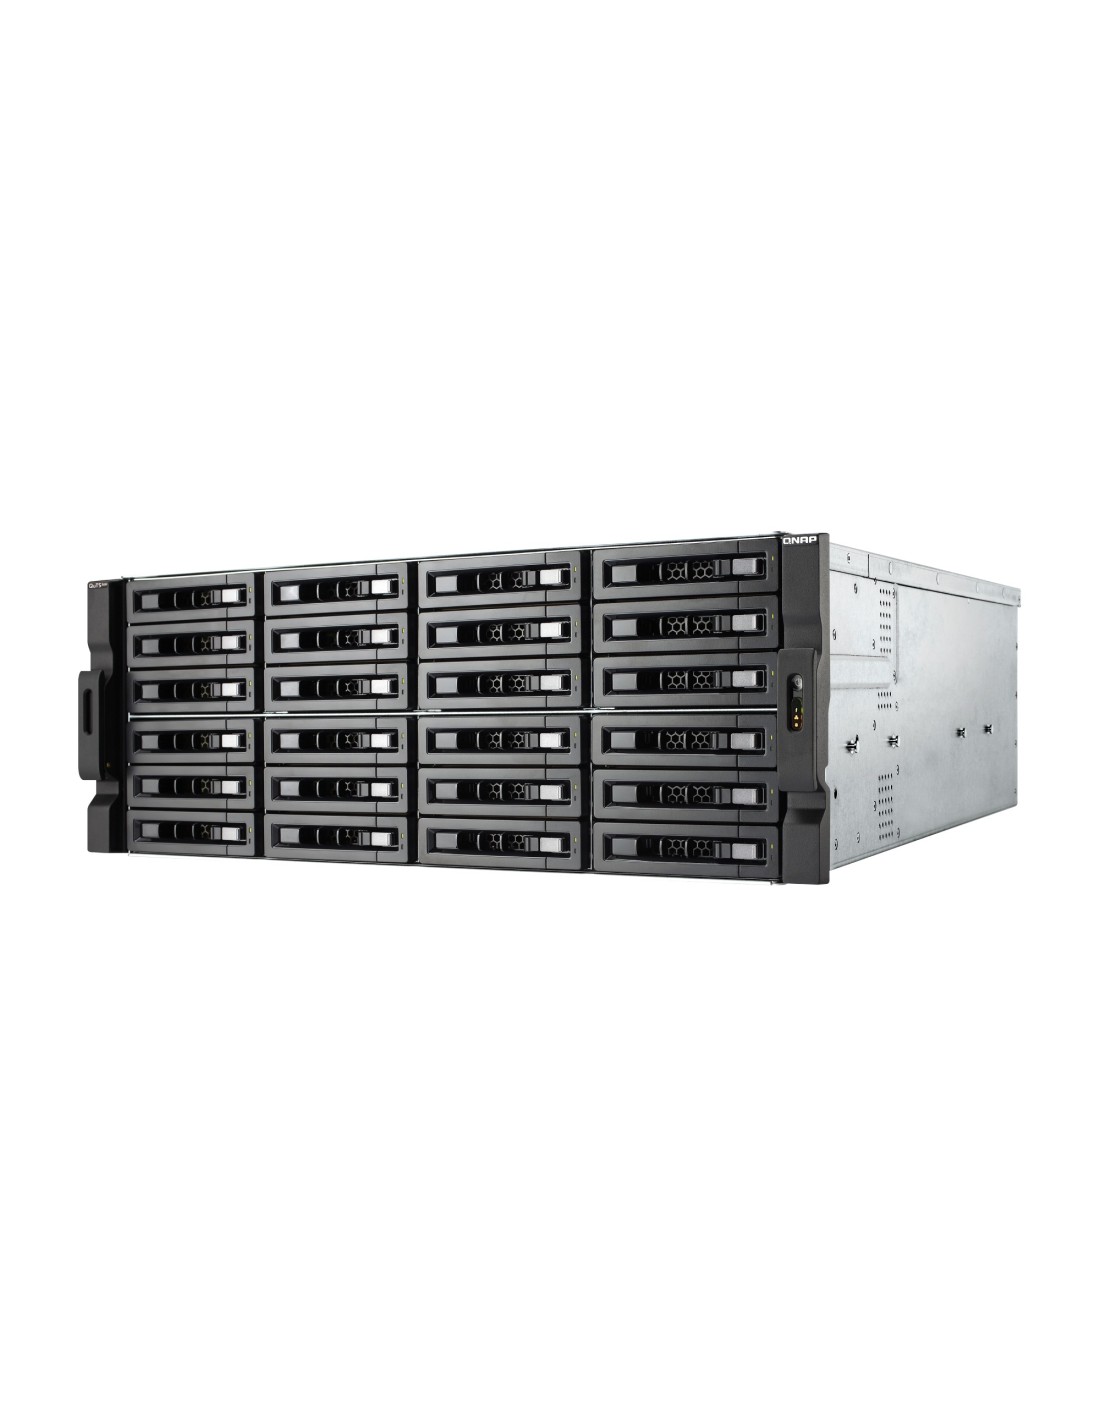 TS-h2477XU-RP-3700X-32G NAS rack 24 bahías - AMD Ryzen 7 3700X 8 núcleos 4.4 GHz, 32GB DDR4 (max 128 GB)